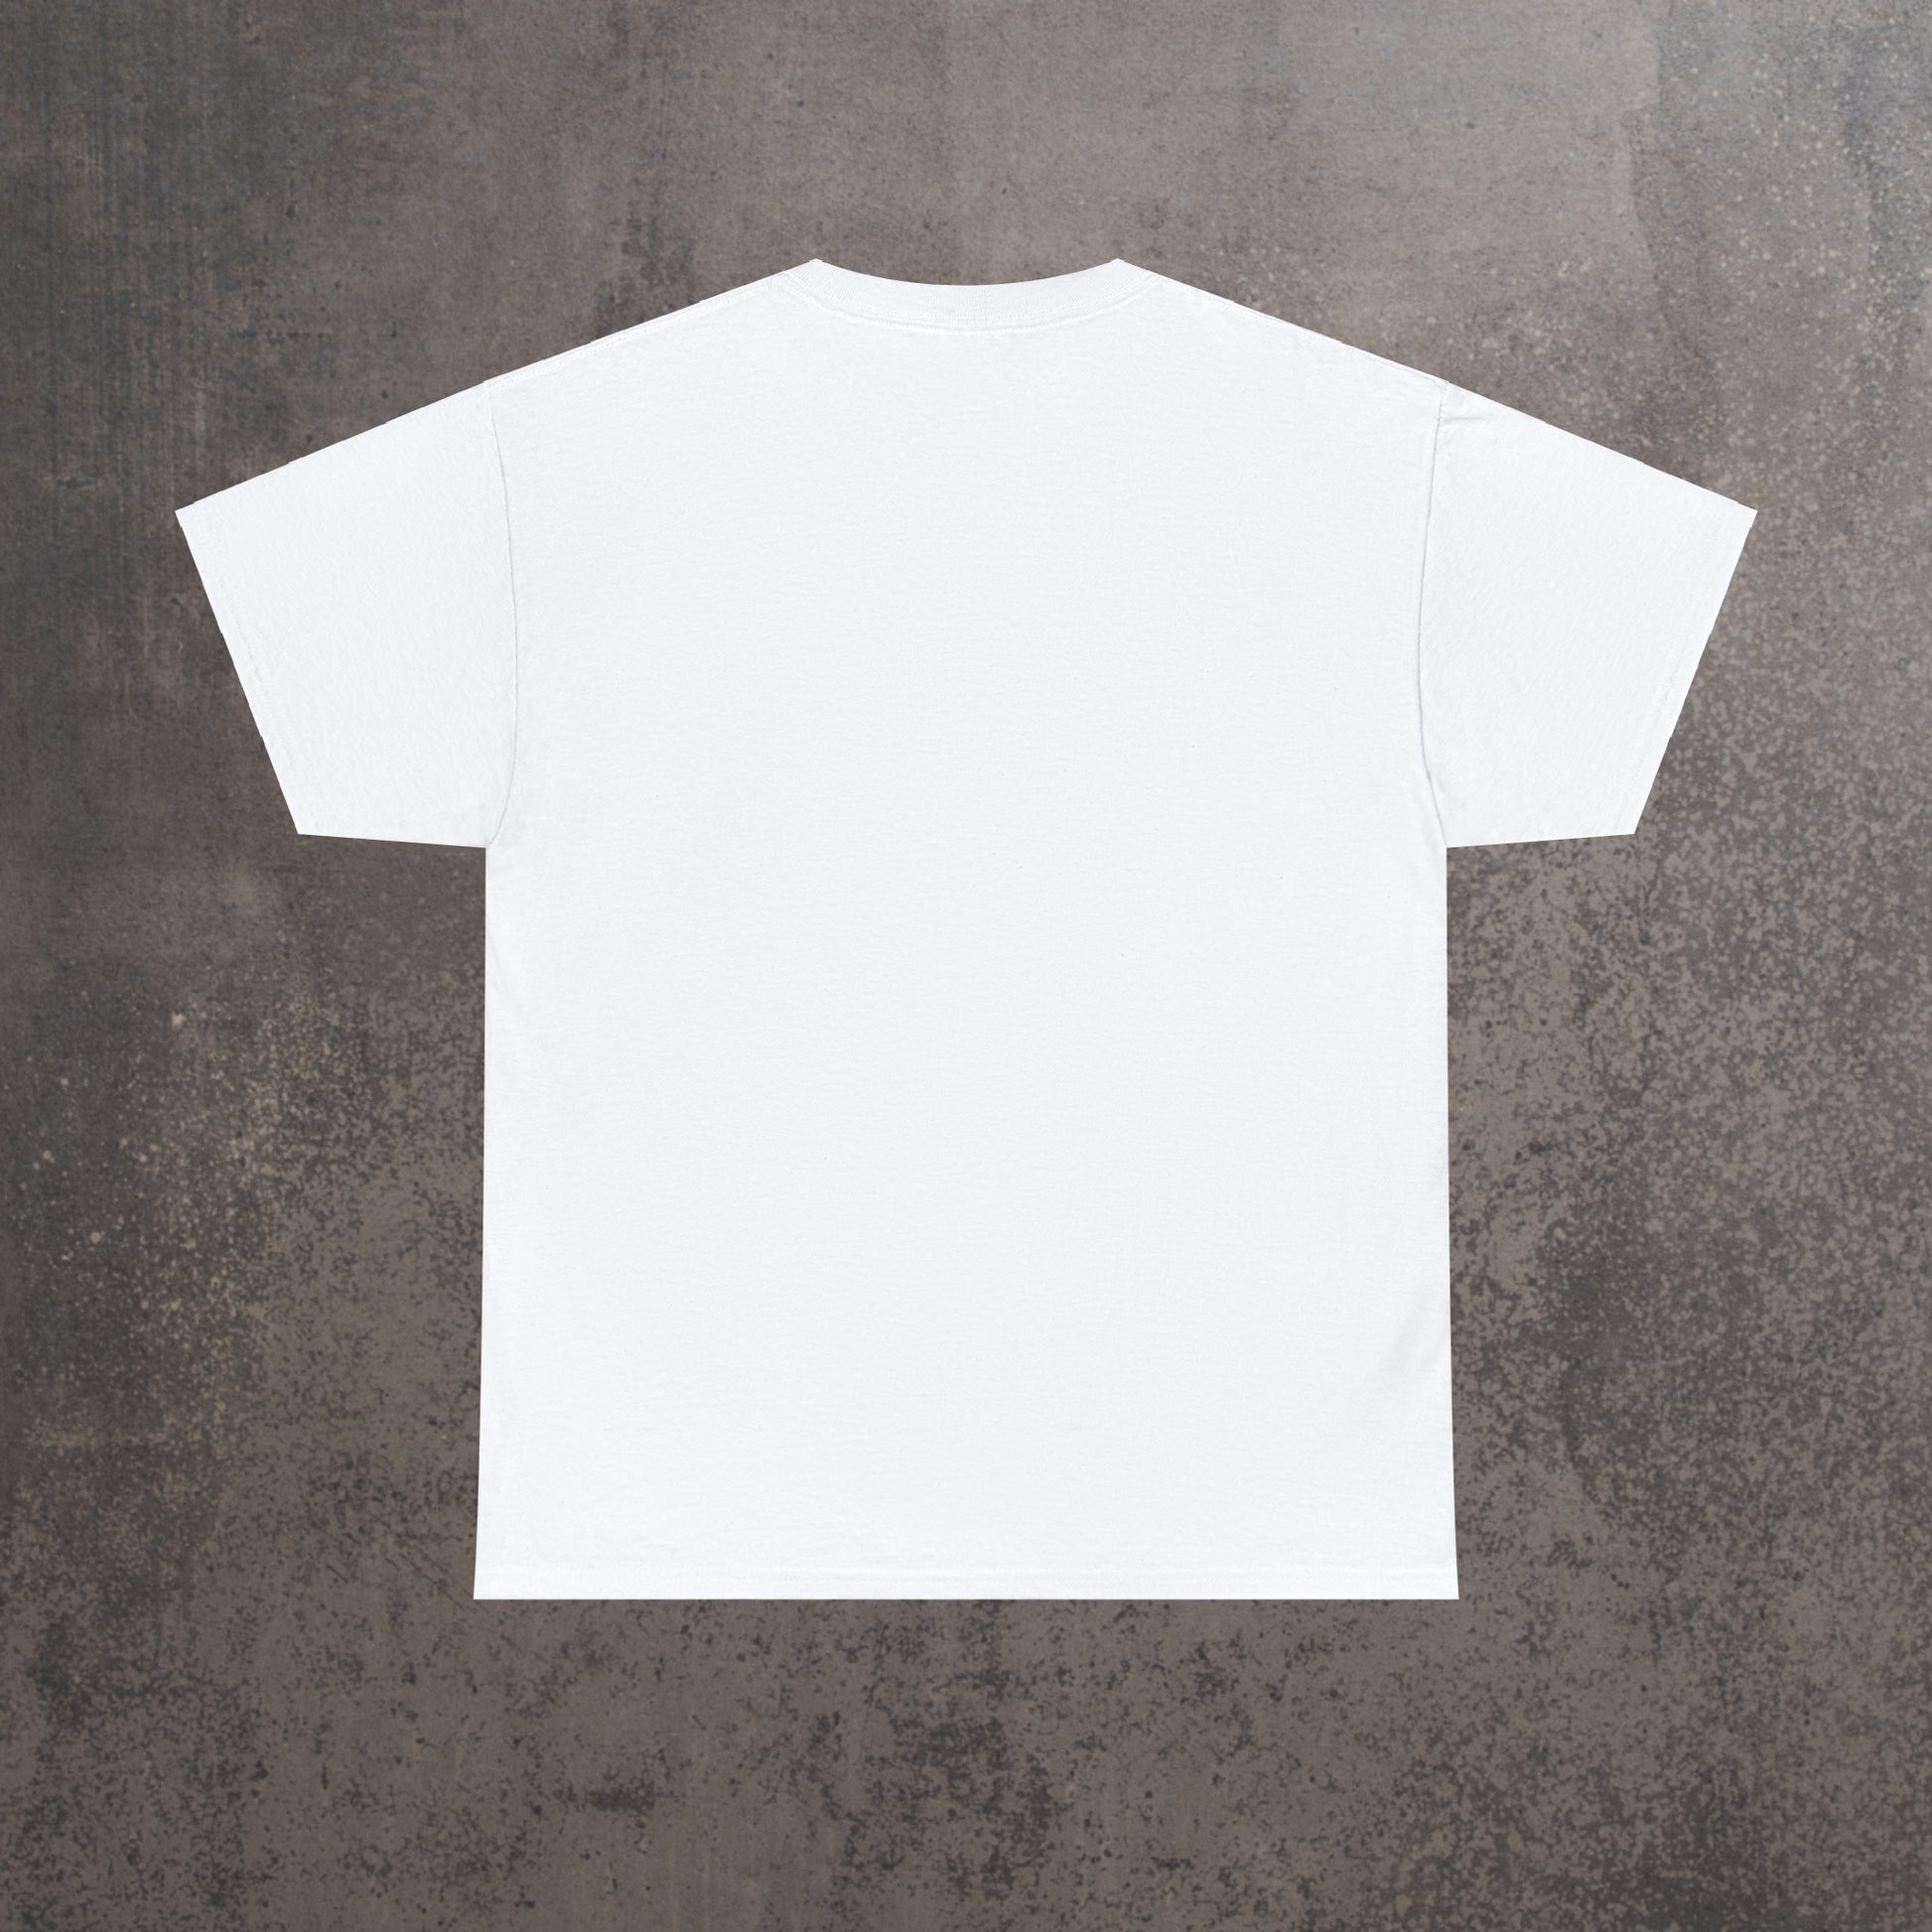 RECONZY White 'Logo - Own It' Pop-Punk T-Shirt - Back View.